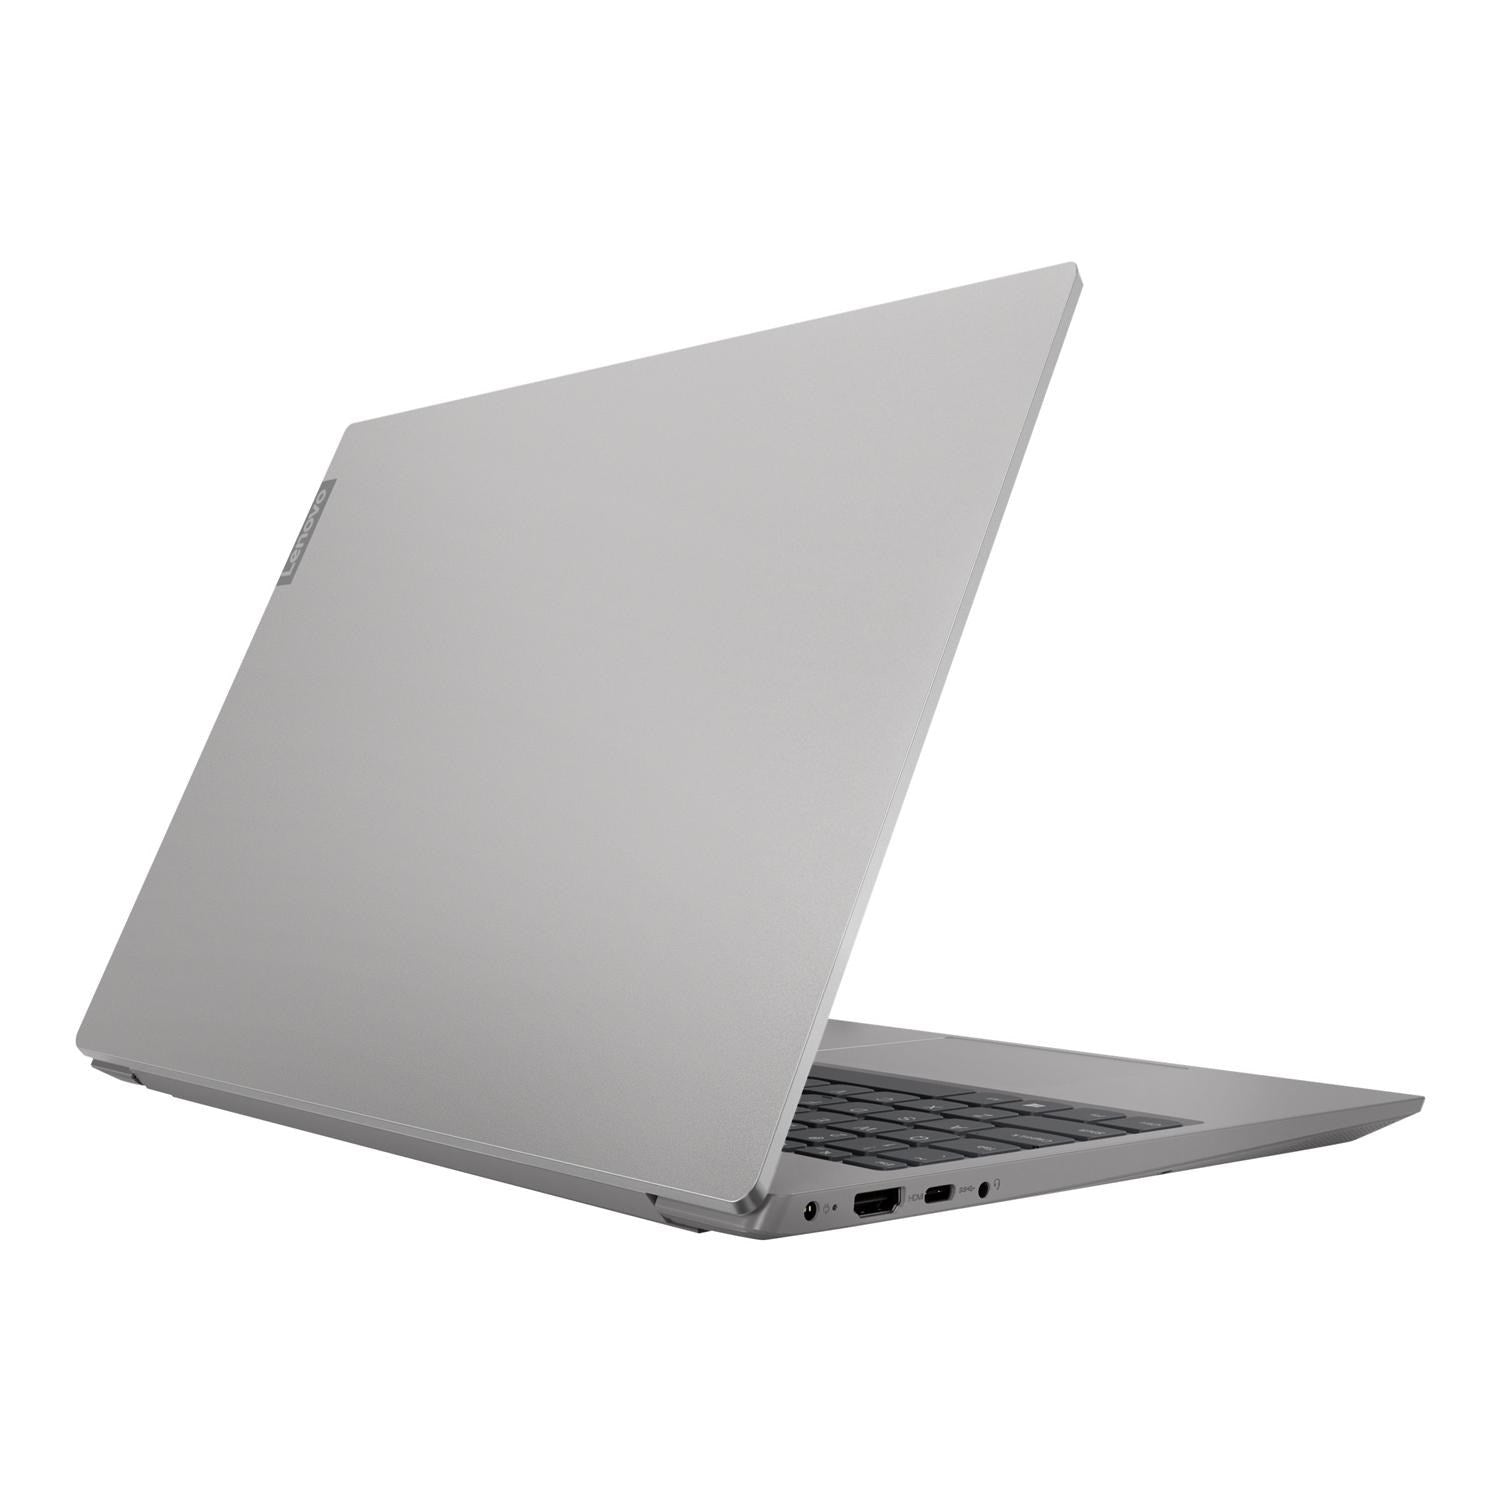 Lenovo IdeaPad S340-15IIL Laptop Intel Core i3 4GB RAM 128GB SSD 15.6" Full HD - Grey